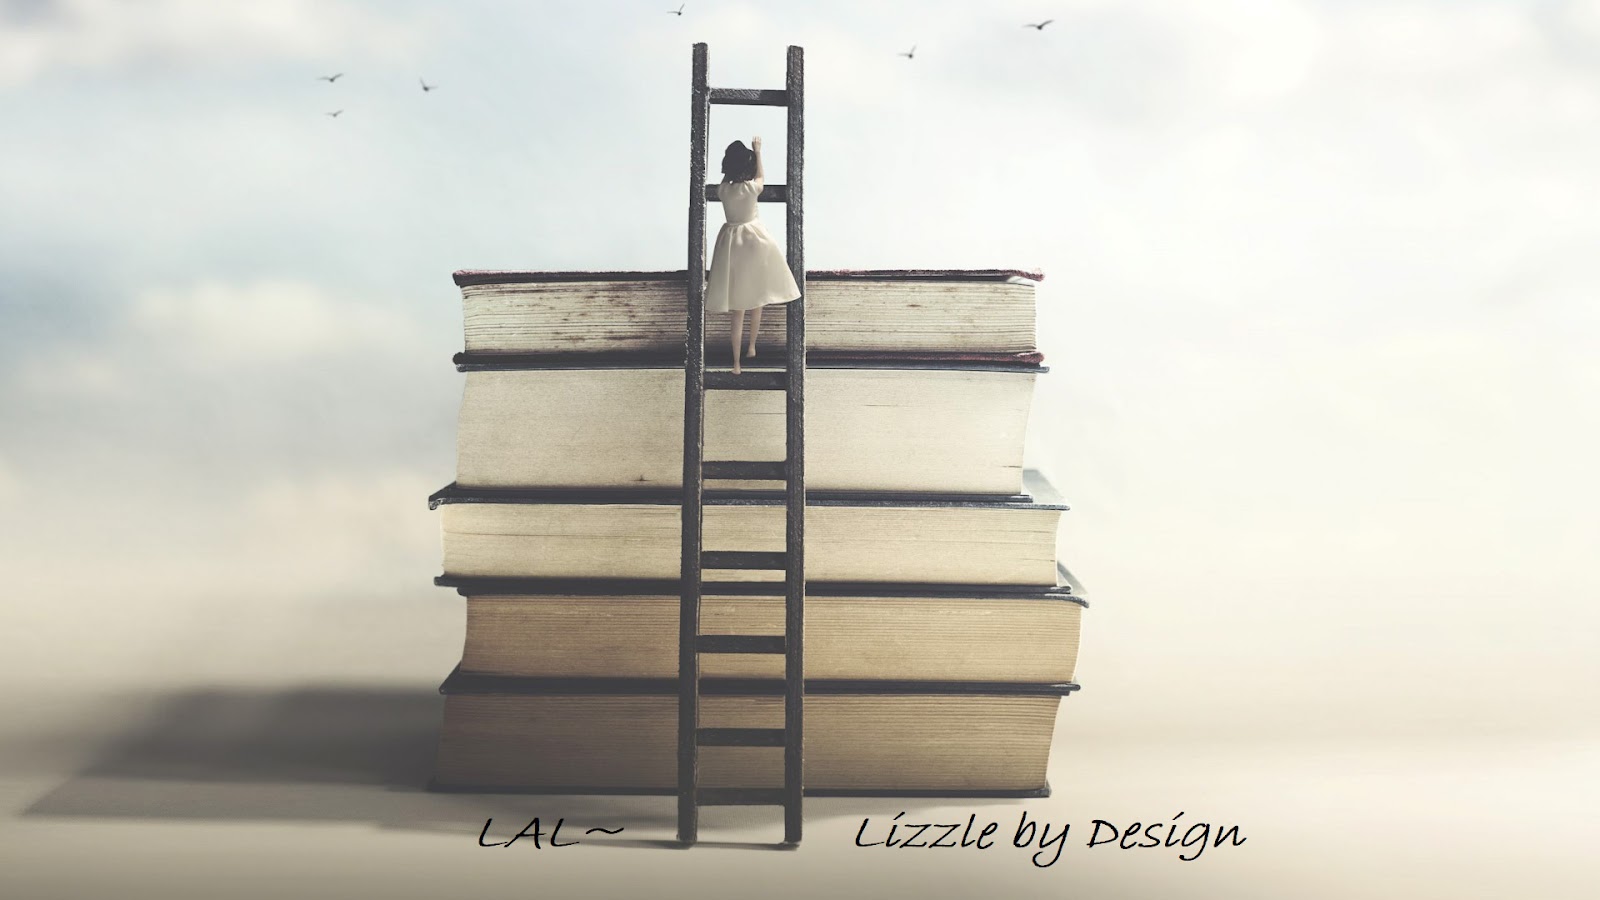 LAL~ Lizzle by Design 